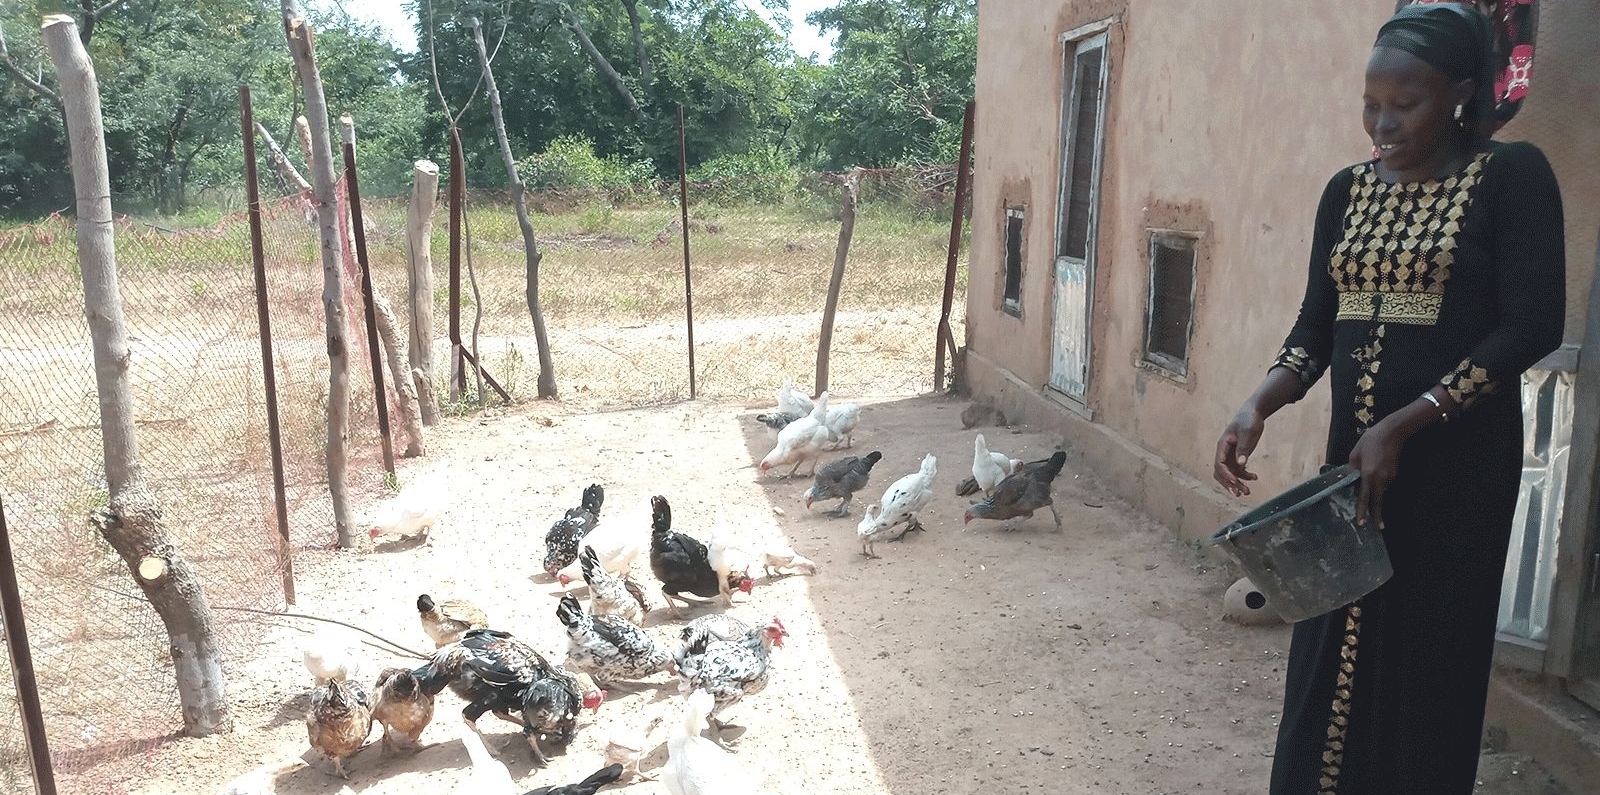 Poultry Farmer in Mali